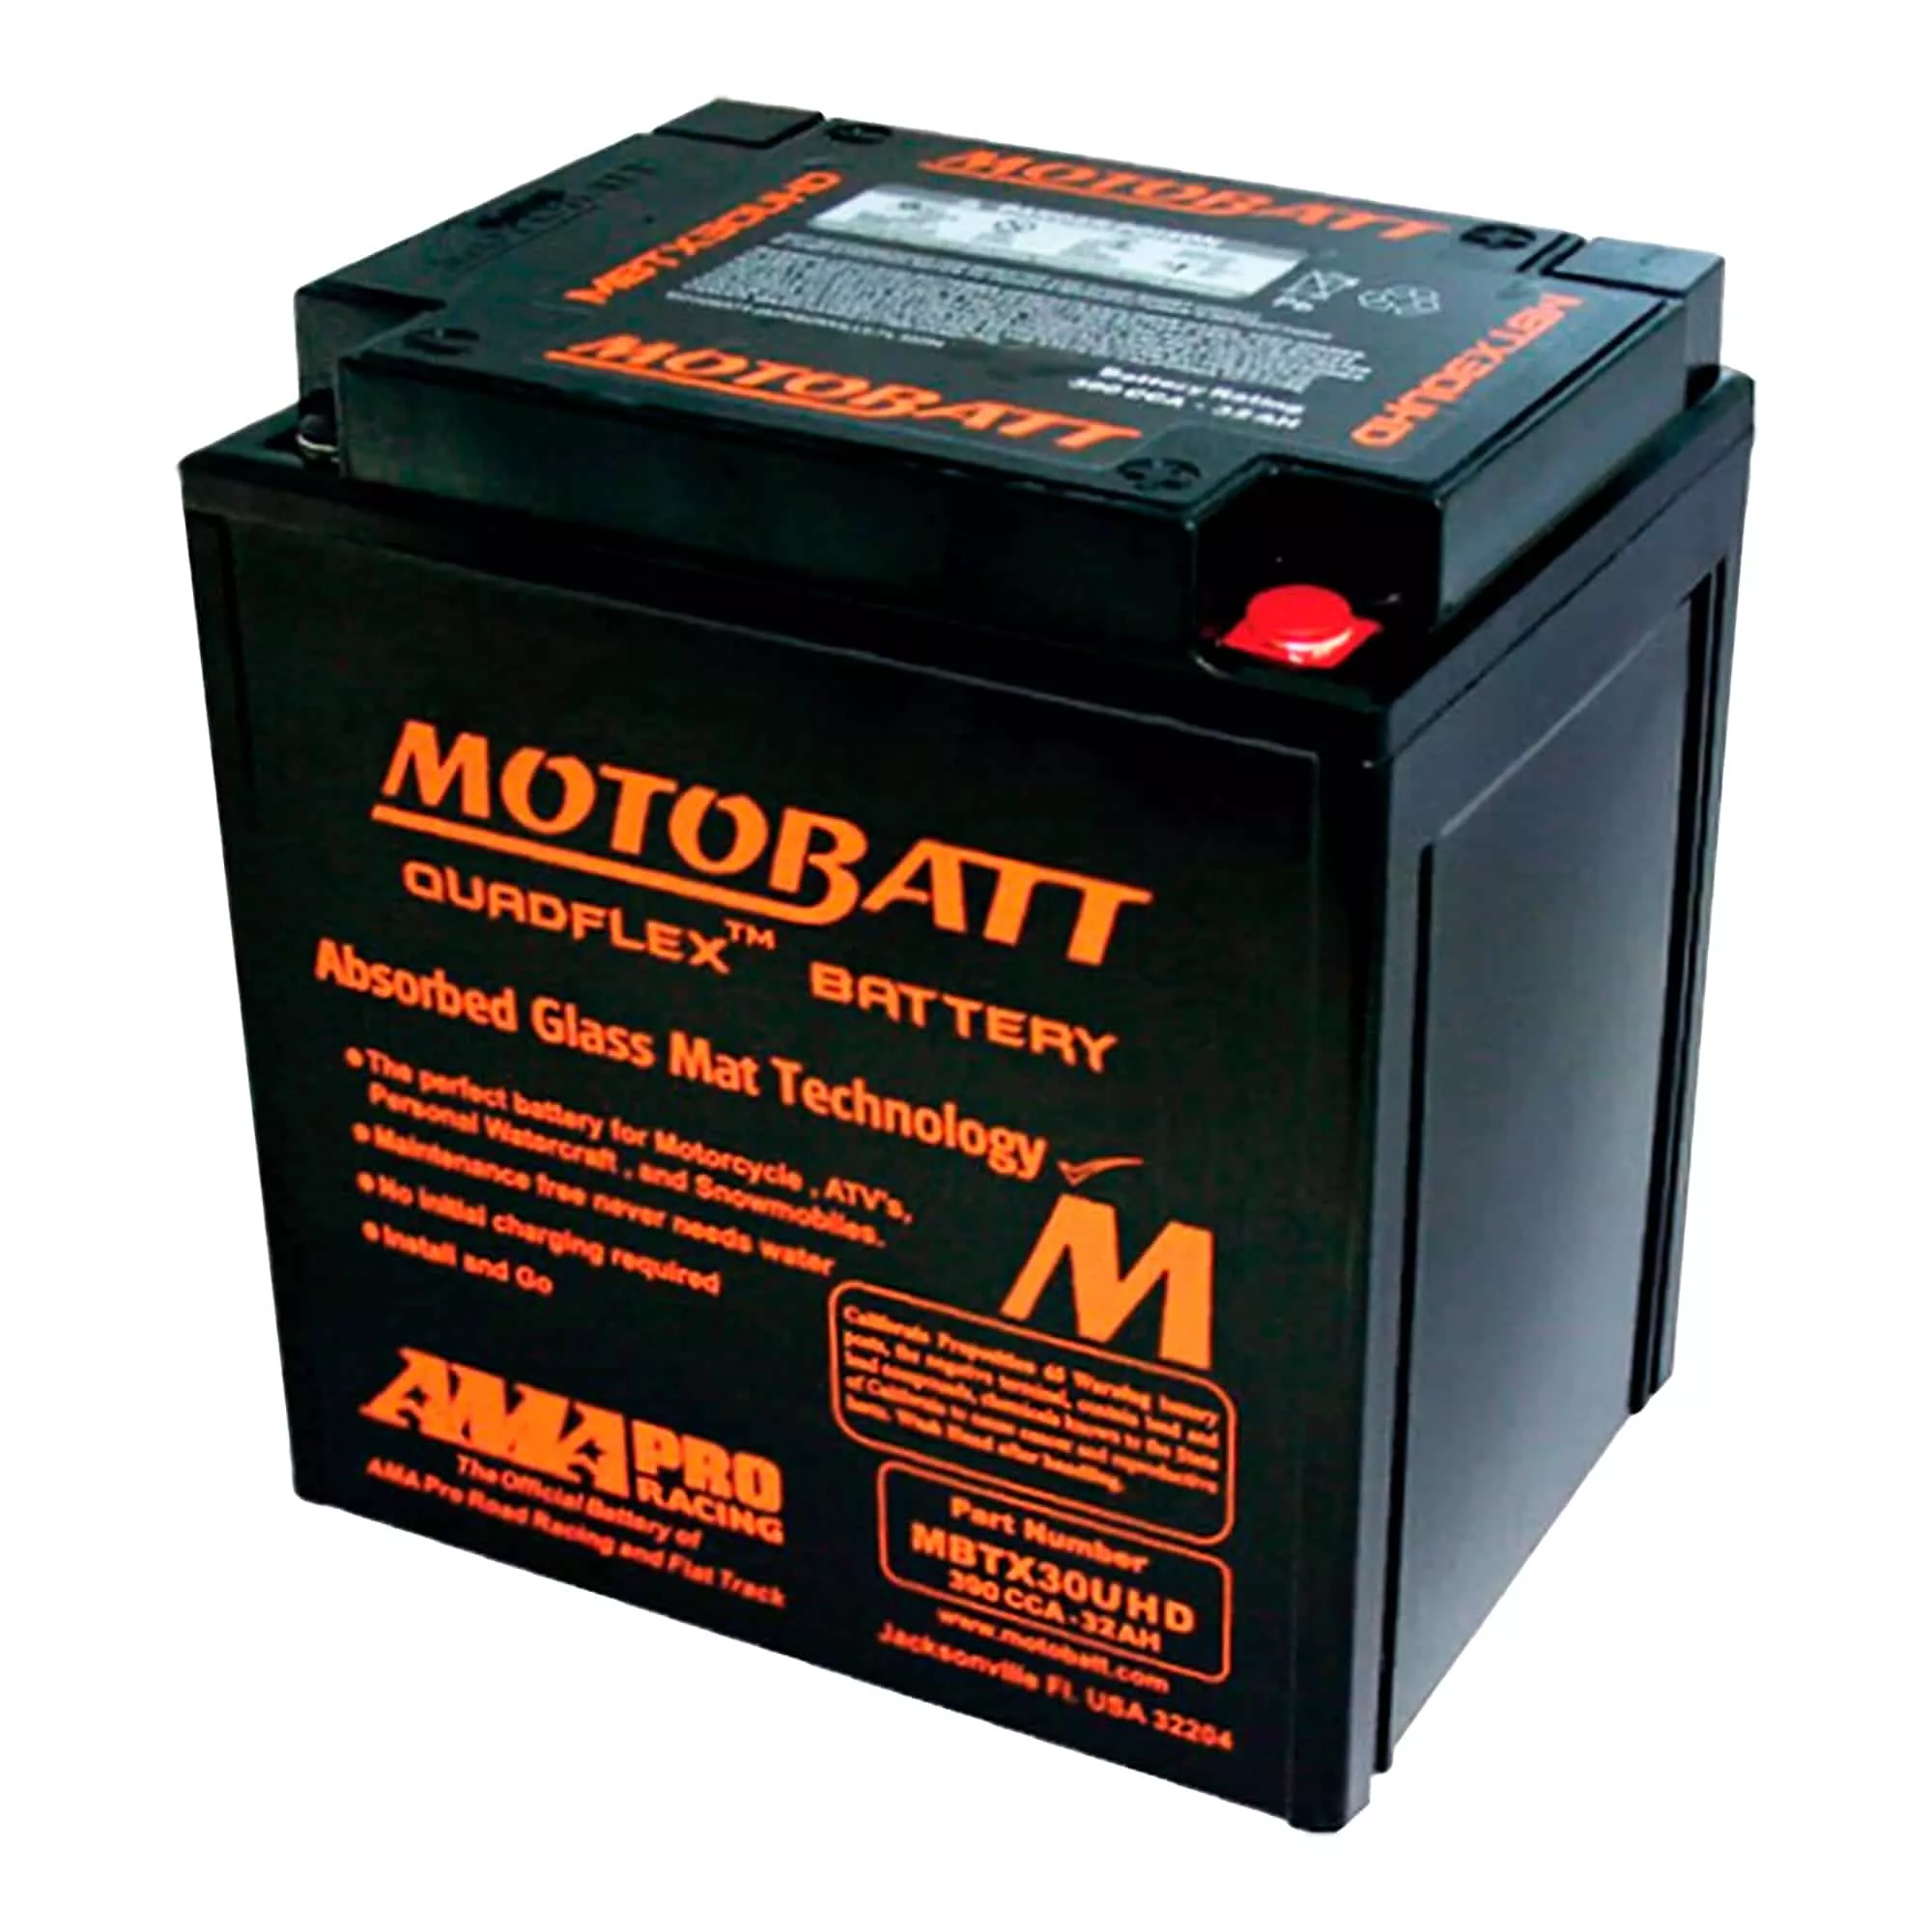 Мото акумулятор MOTOBATT залитий та заряджений AGM 32Ah 390A (MBTX30UHD)